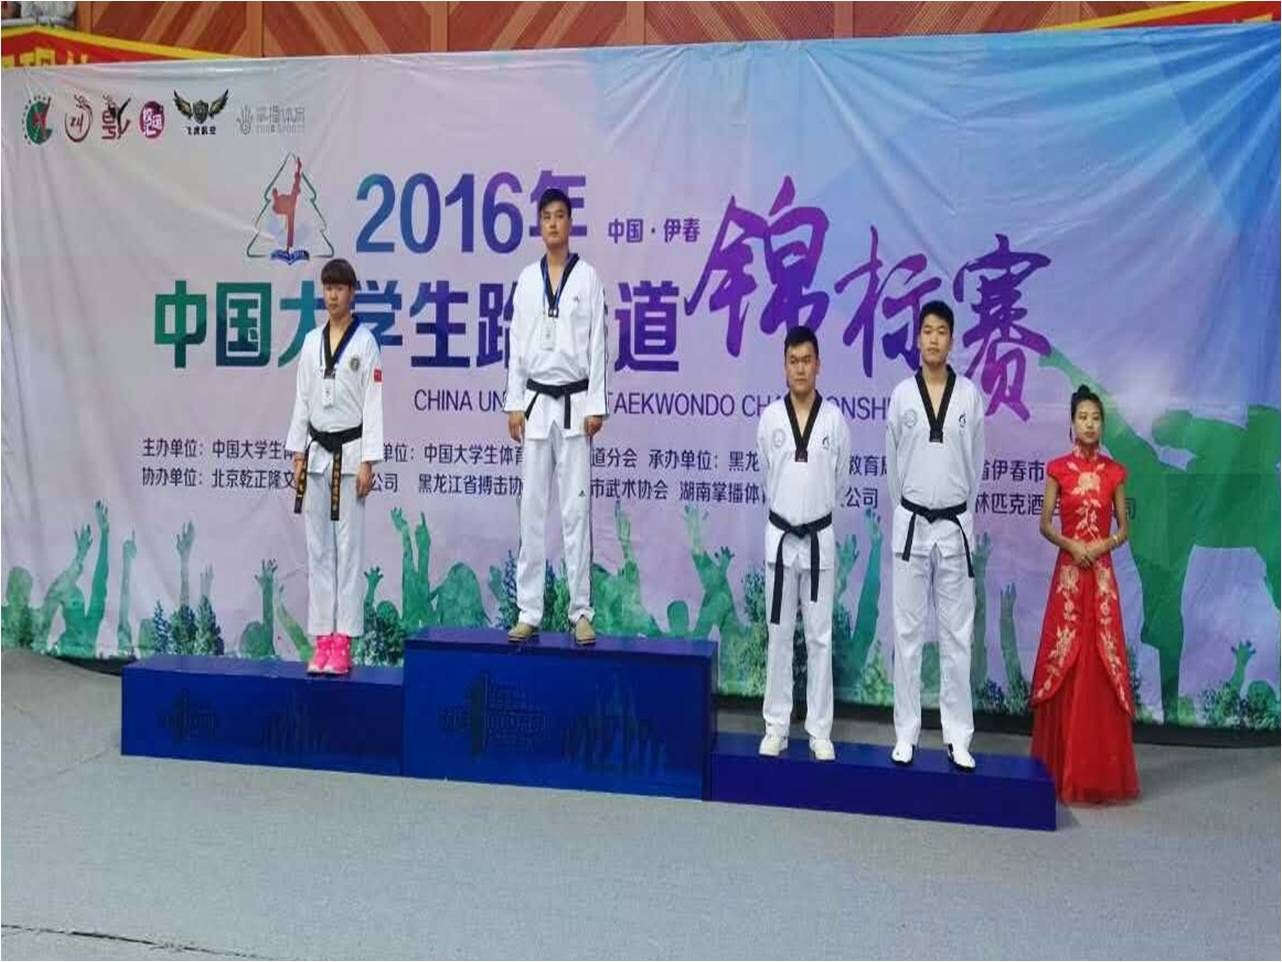 体育学院马超同学获得中国大学生跆拳道锦标赛冠军